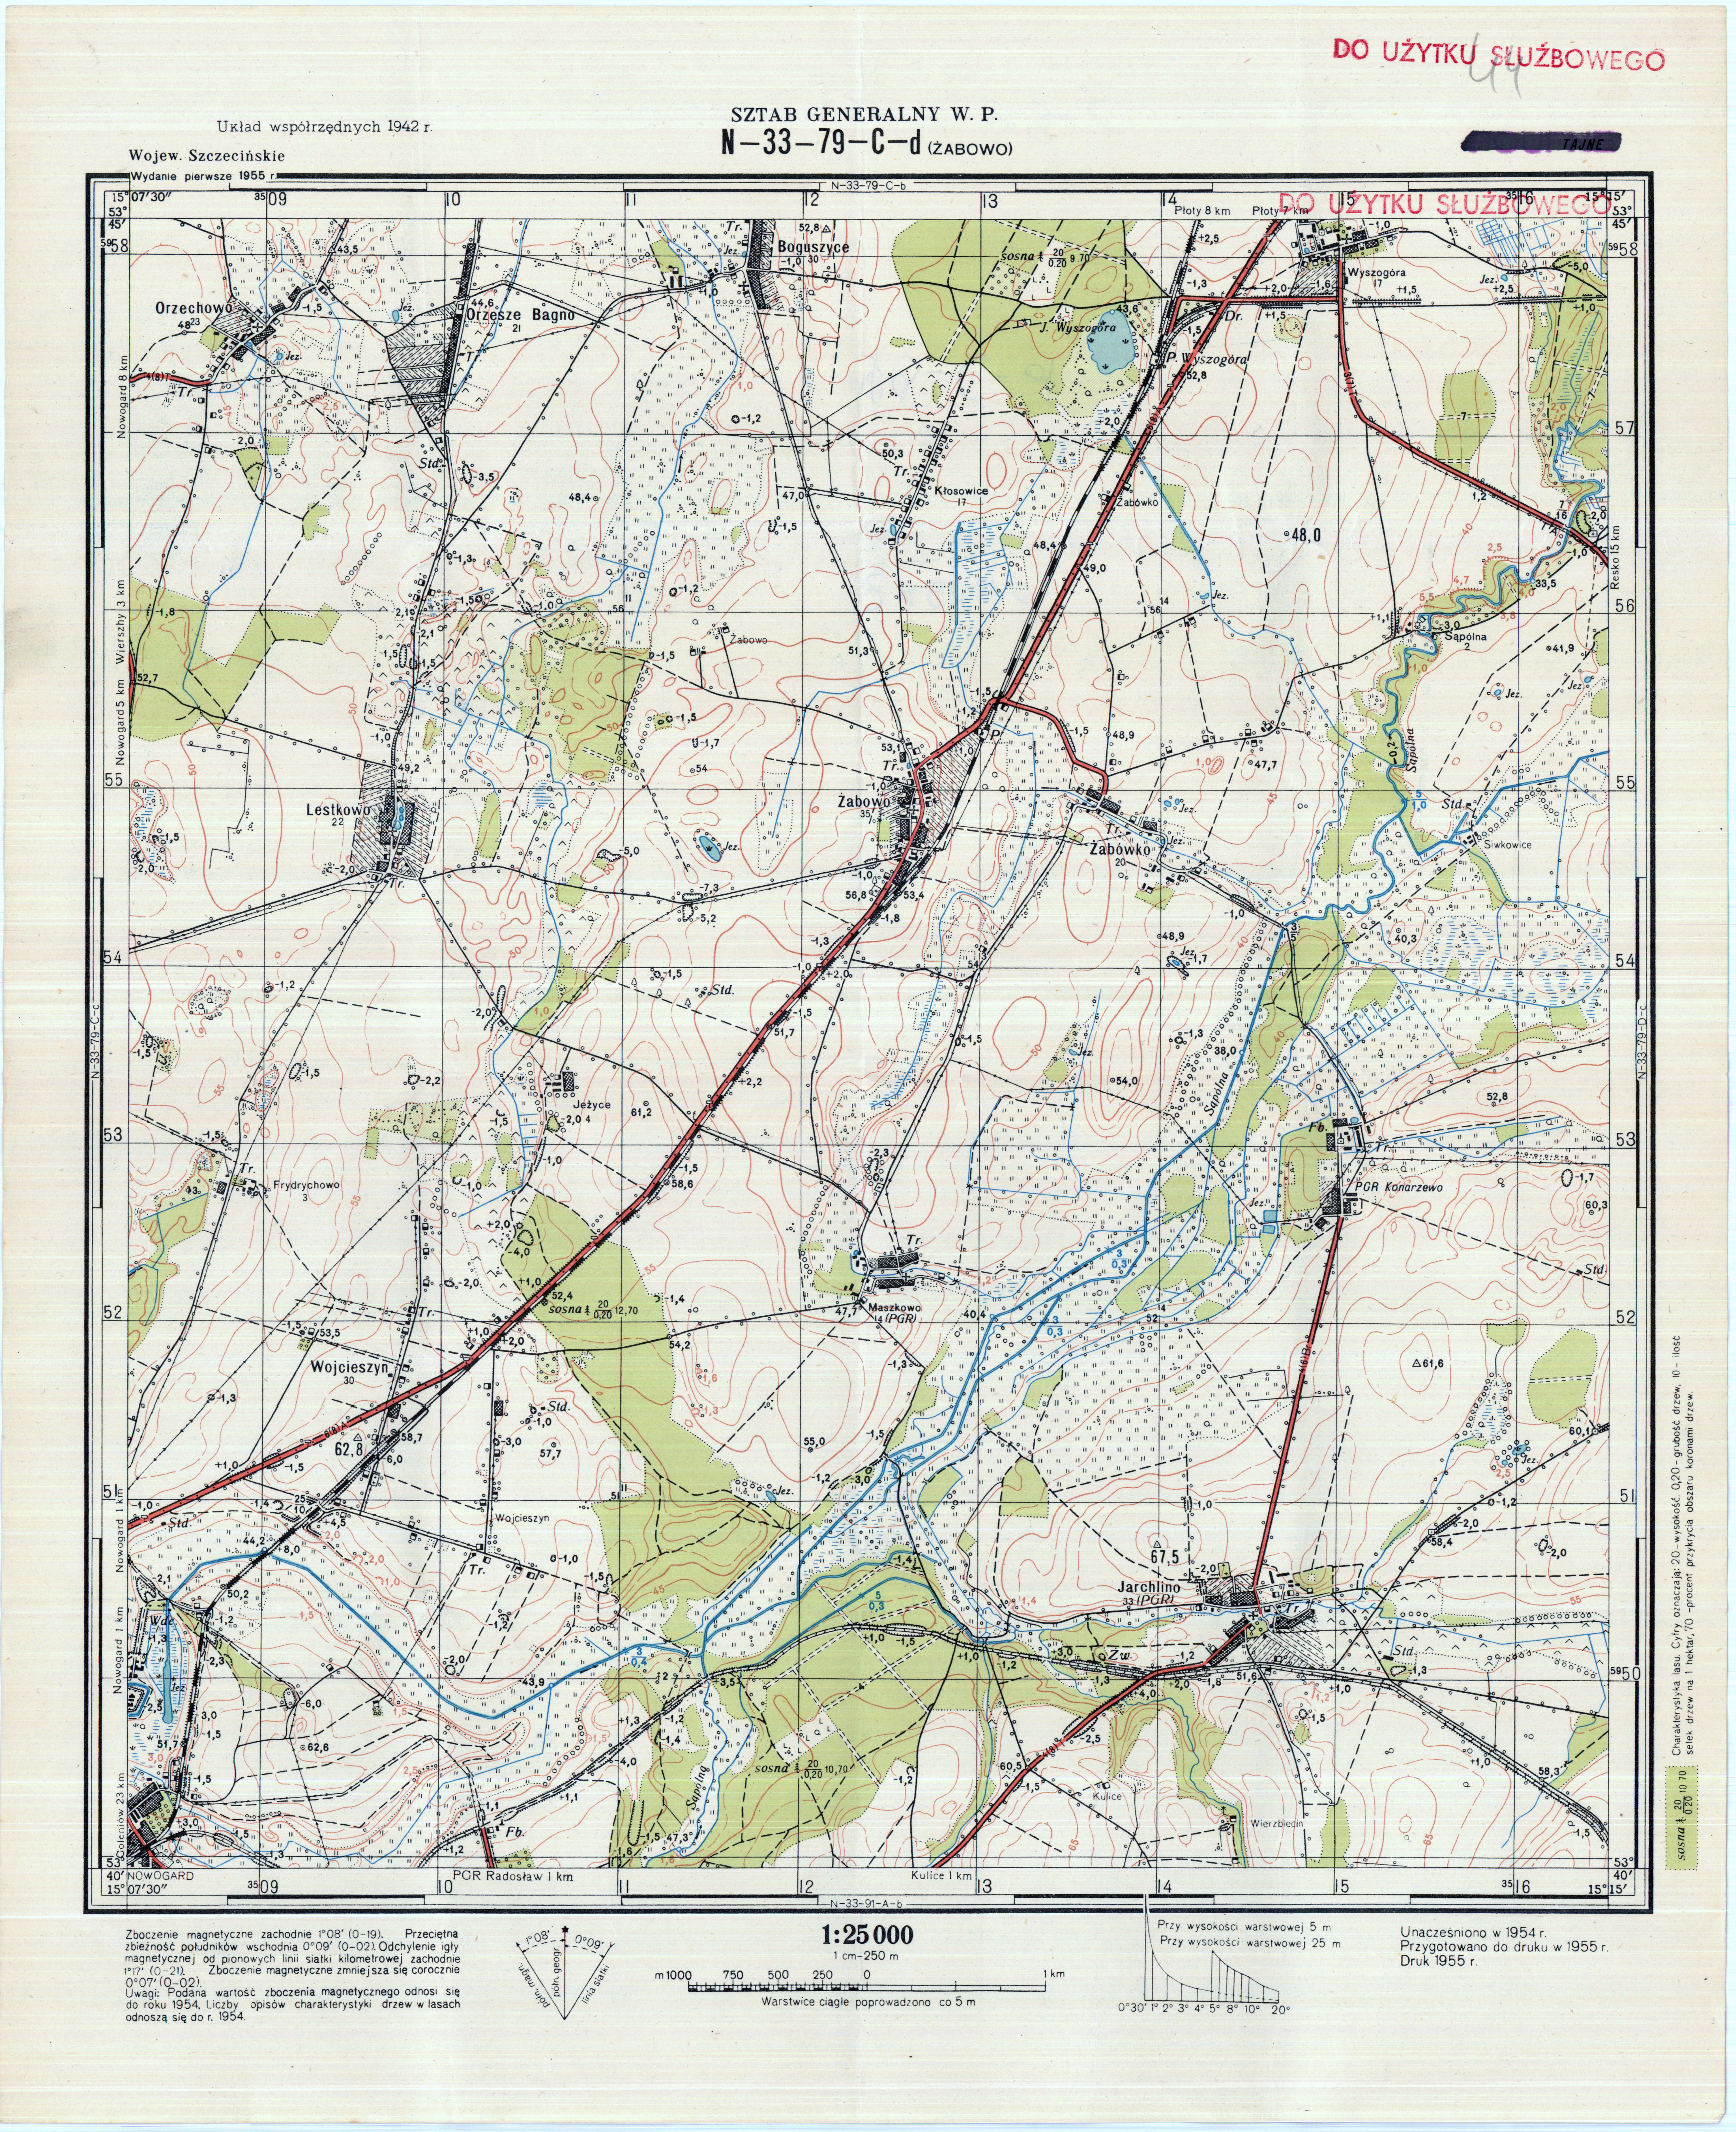 Mapy topograficzne LWP 1_25 000 - N-33-79-C-d_ZABOWO_1955.jpg